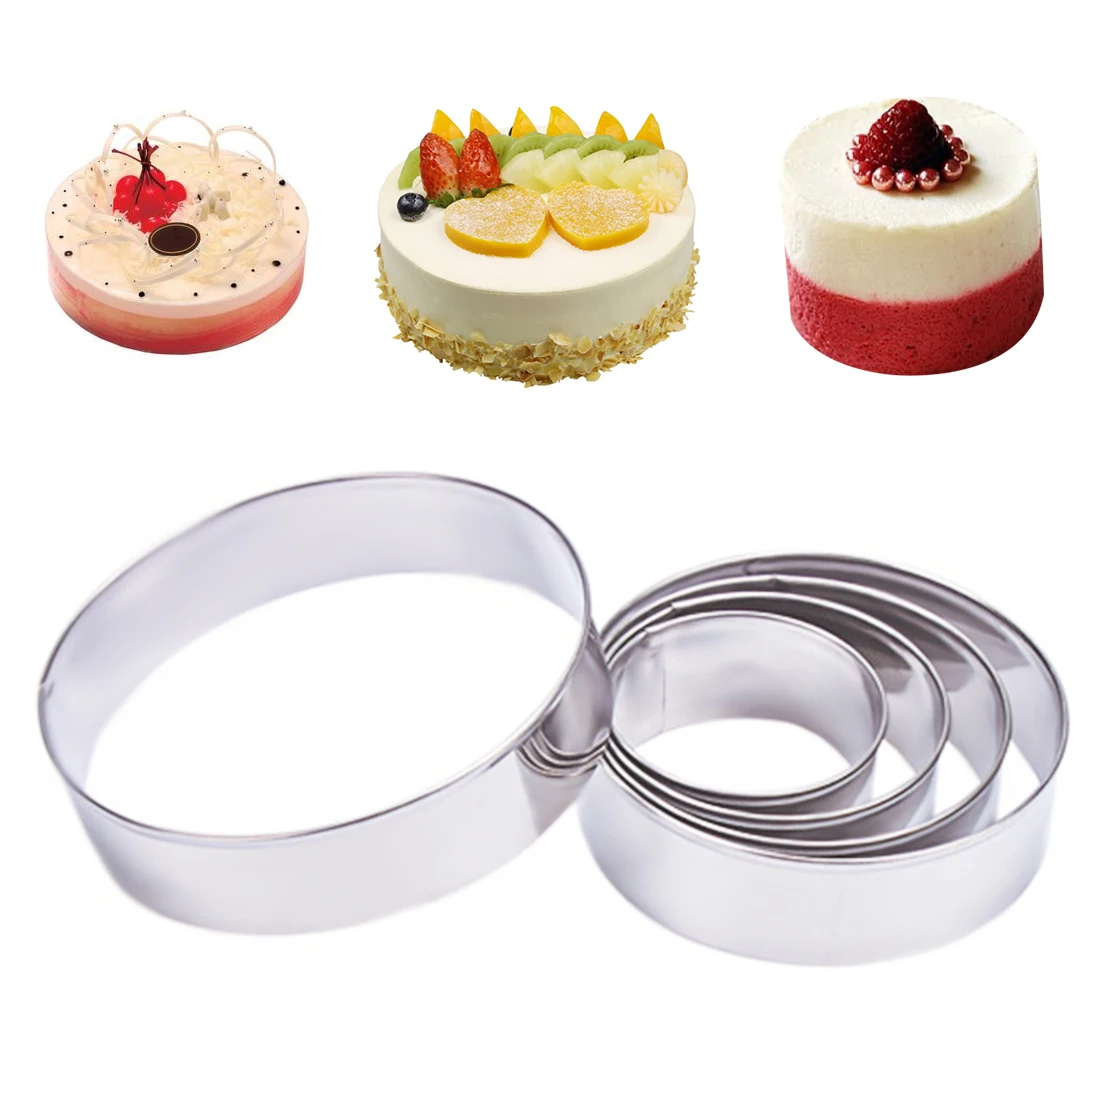 Форма для торта 8 см. Cake Baking Tool форма для выпечки yr1811-12. Форма для торта Cake Mould Set. Форма для выпечки кольцо. Кольца для выпекания тортов.